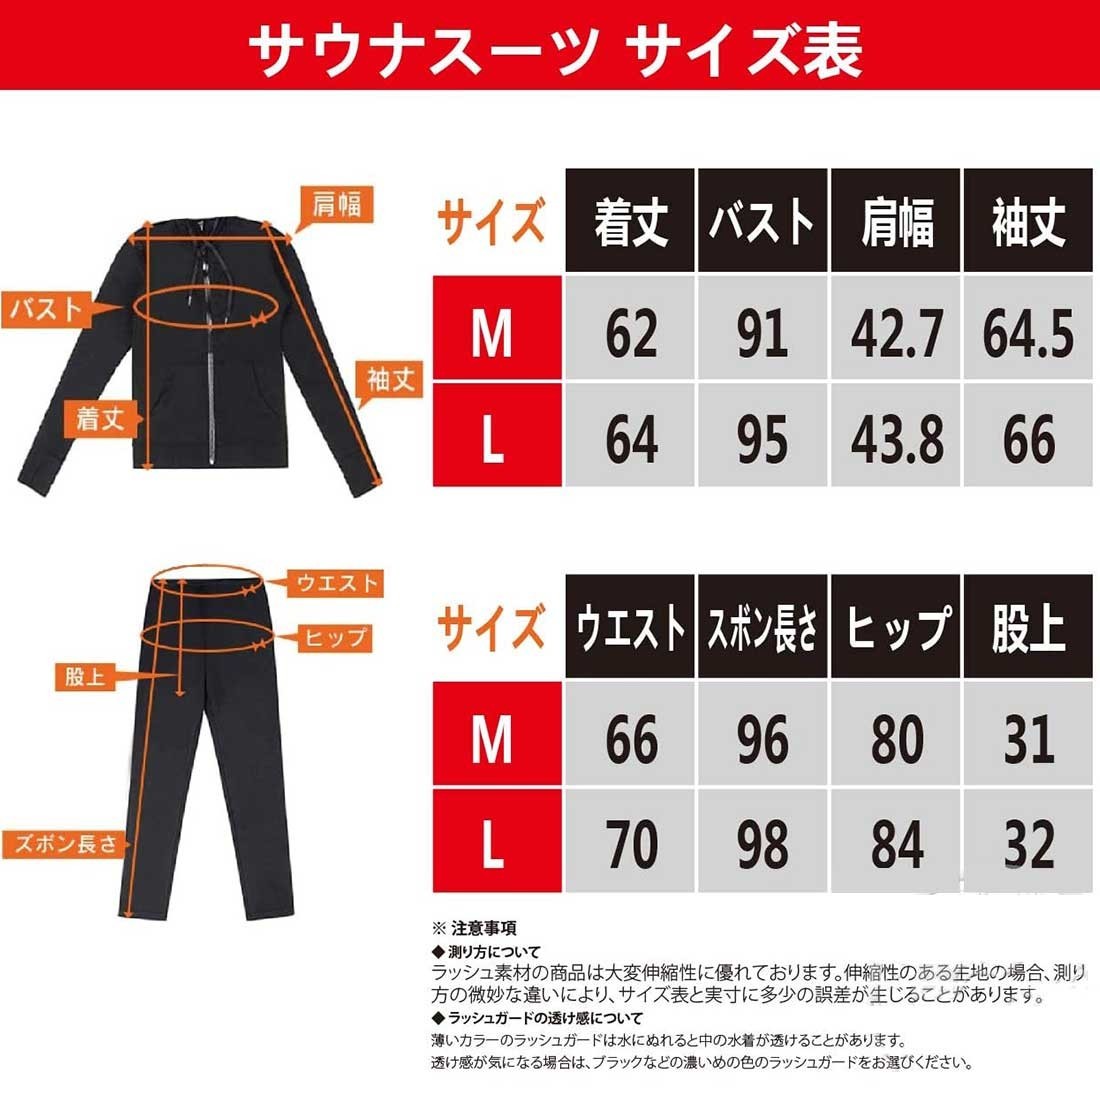  костюм-сауна M размер серый верх и низ в комплекте диета тренировка одежда departure пот движение надеты модный стрейч 